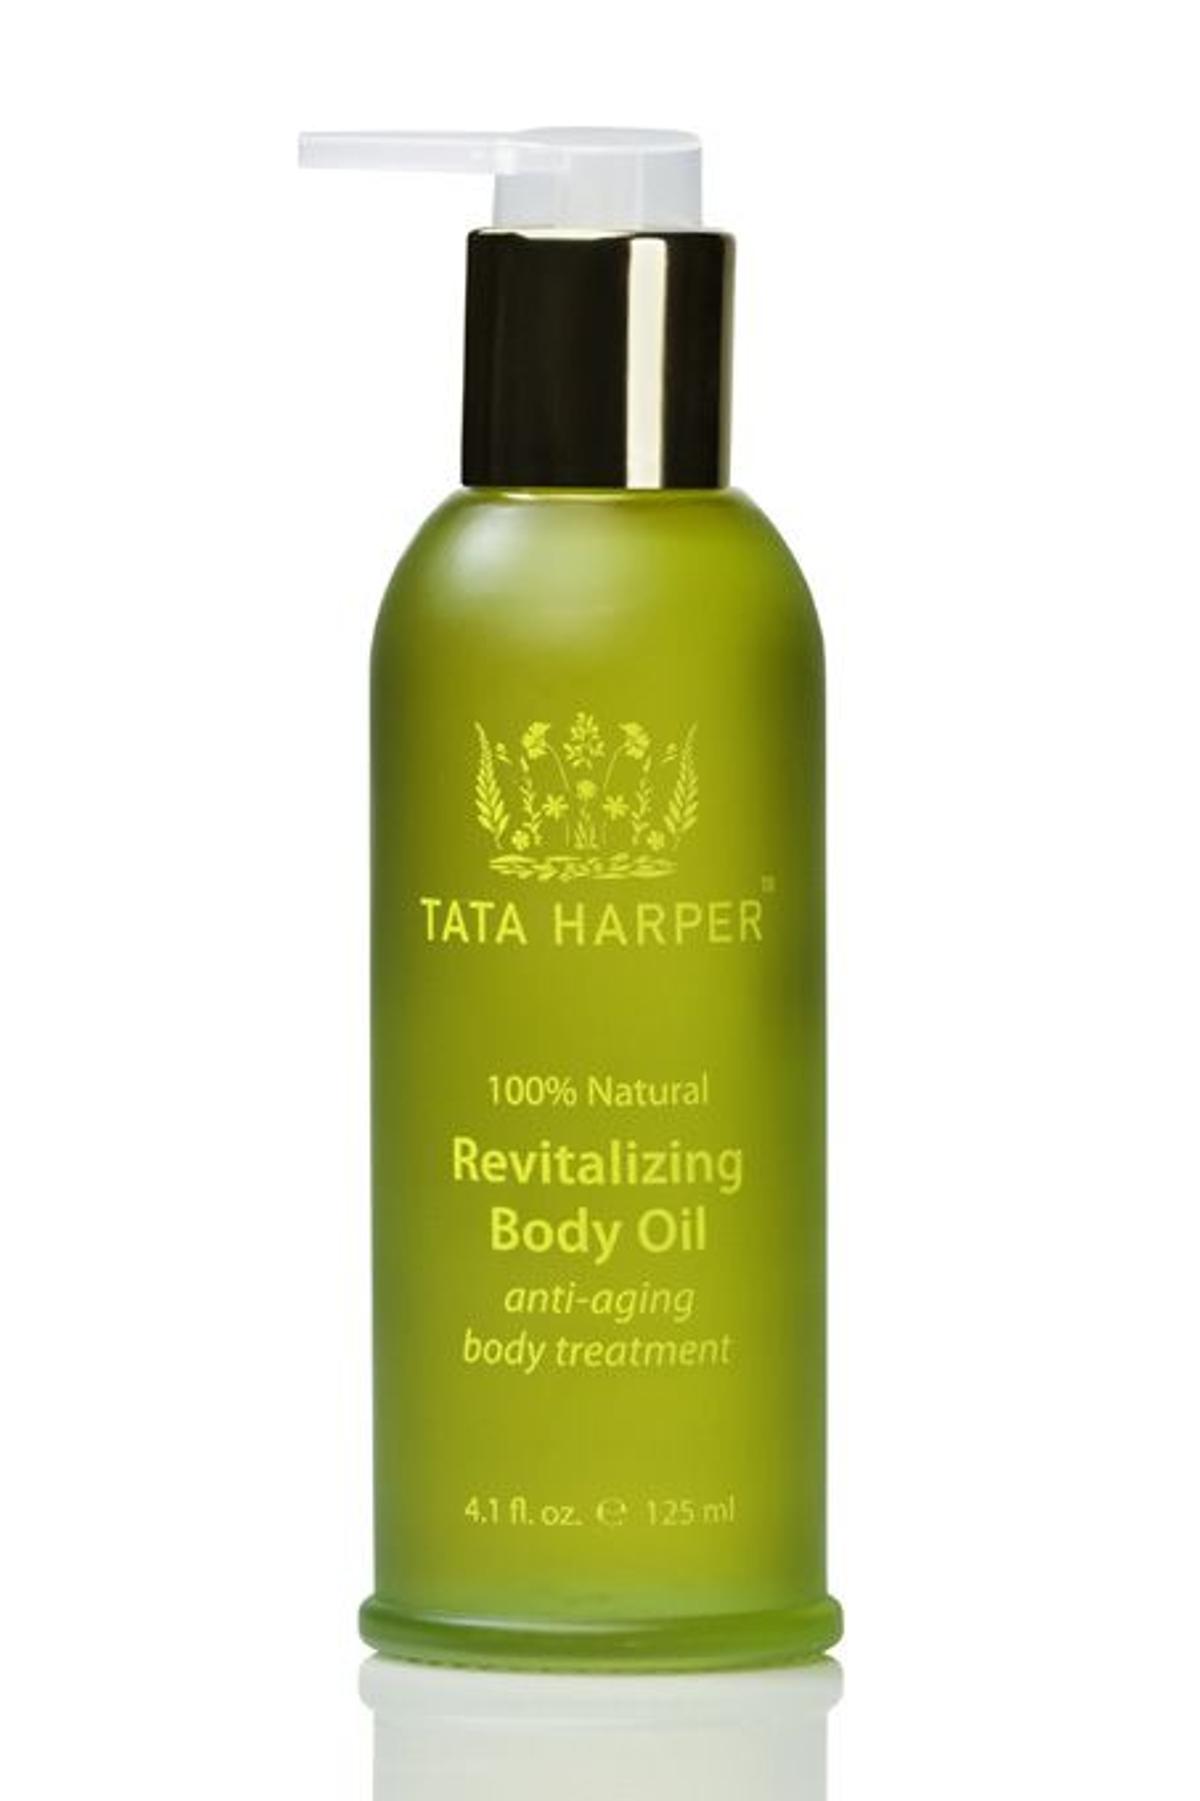 Revitalizing Body Oil de TATA HARPER